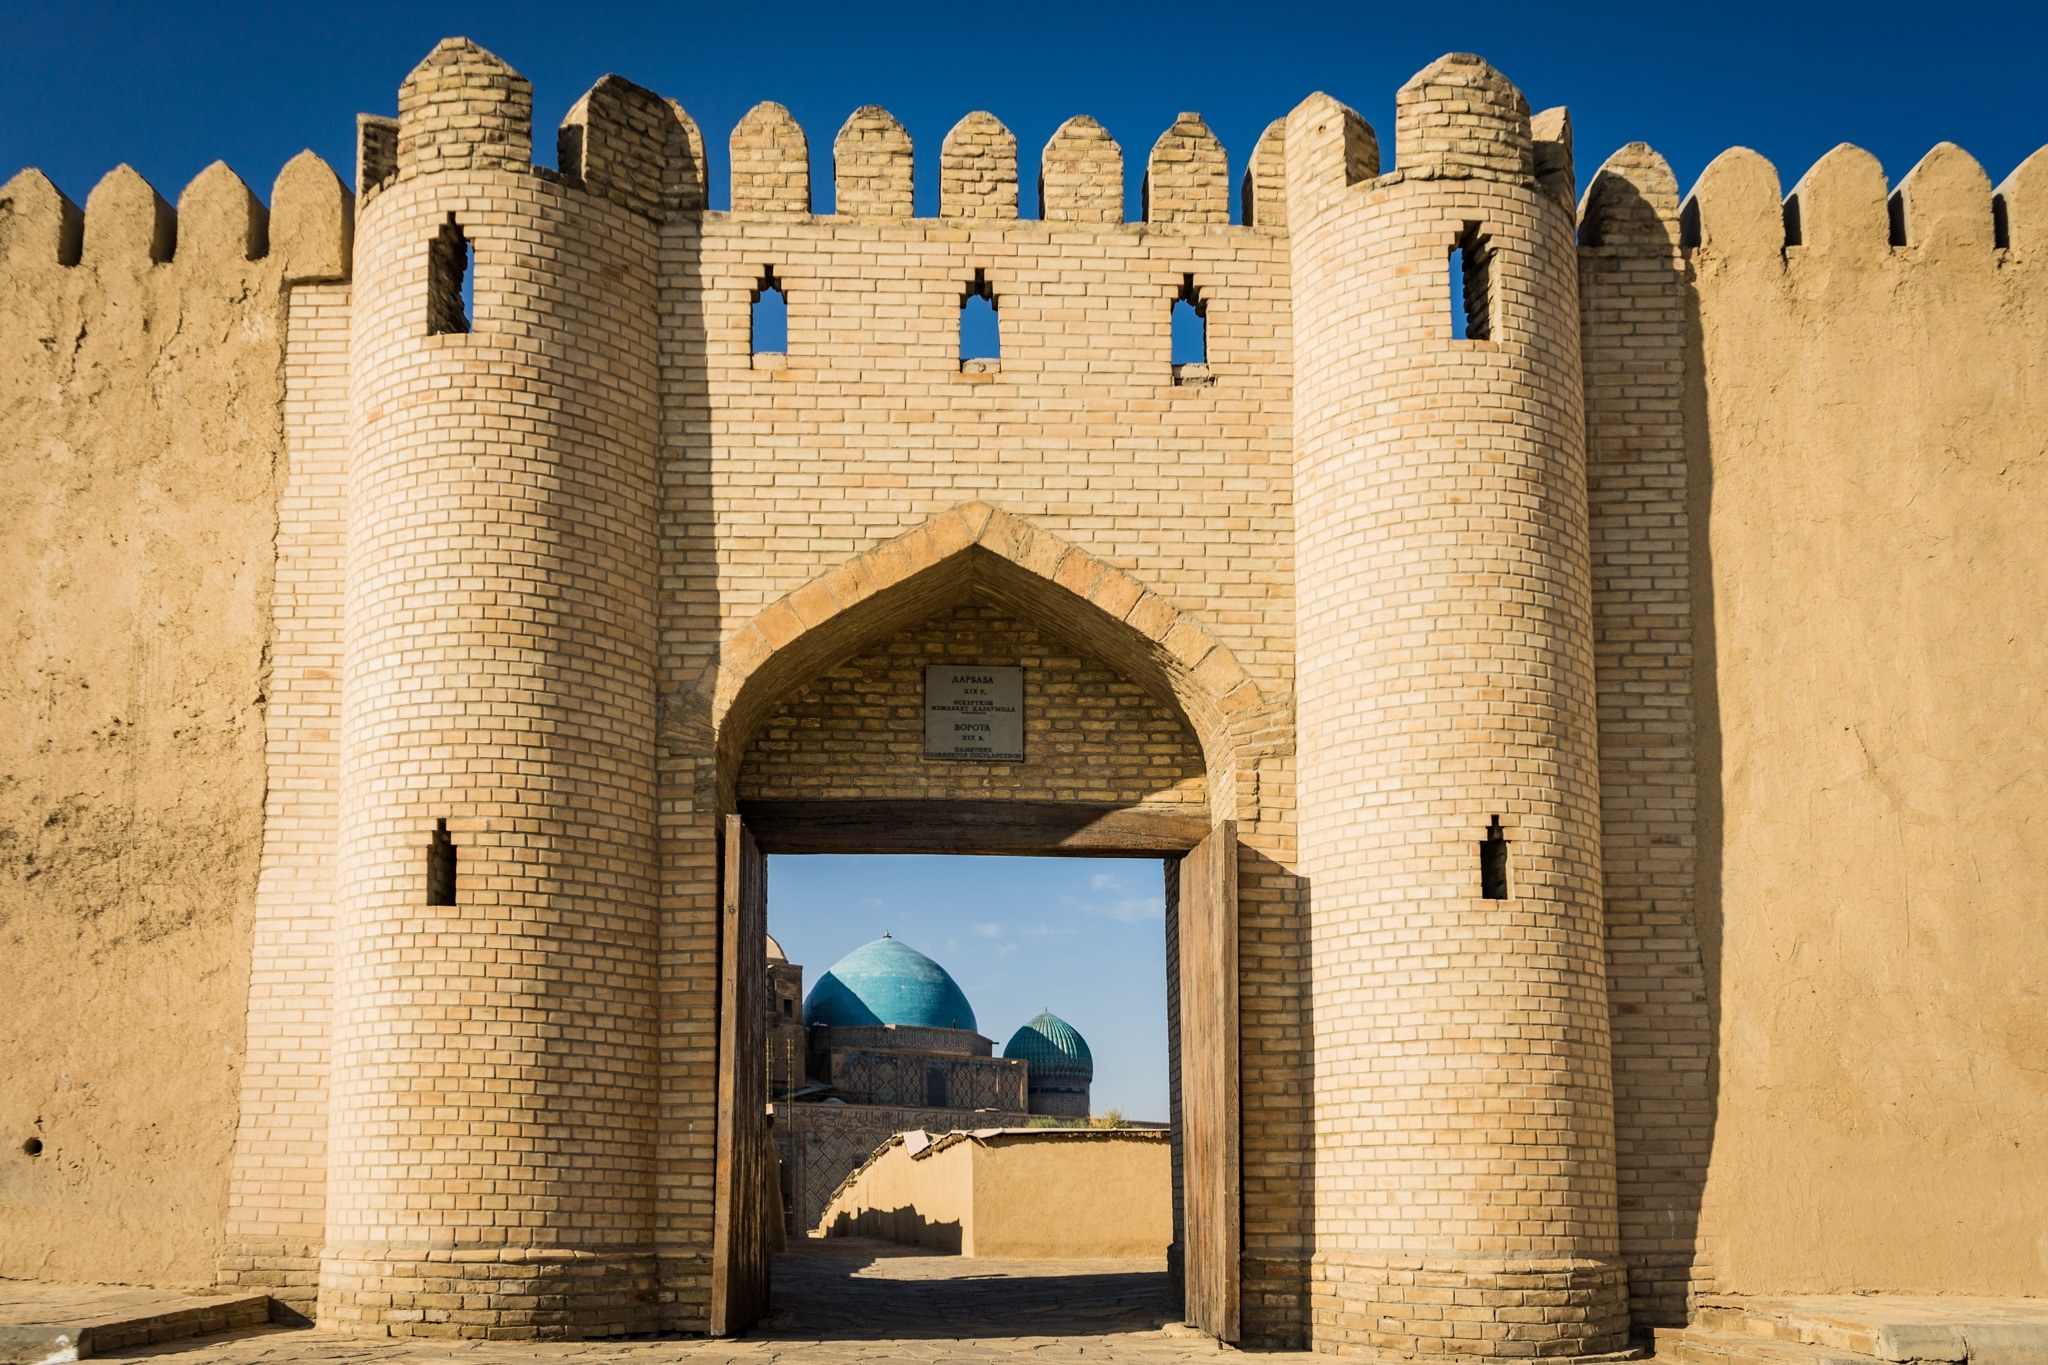 Туркестан как техно-столица Средней Азии: О внутреннем туризме и перспективах развития IT